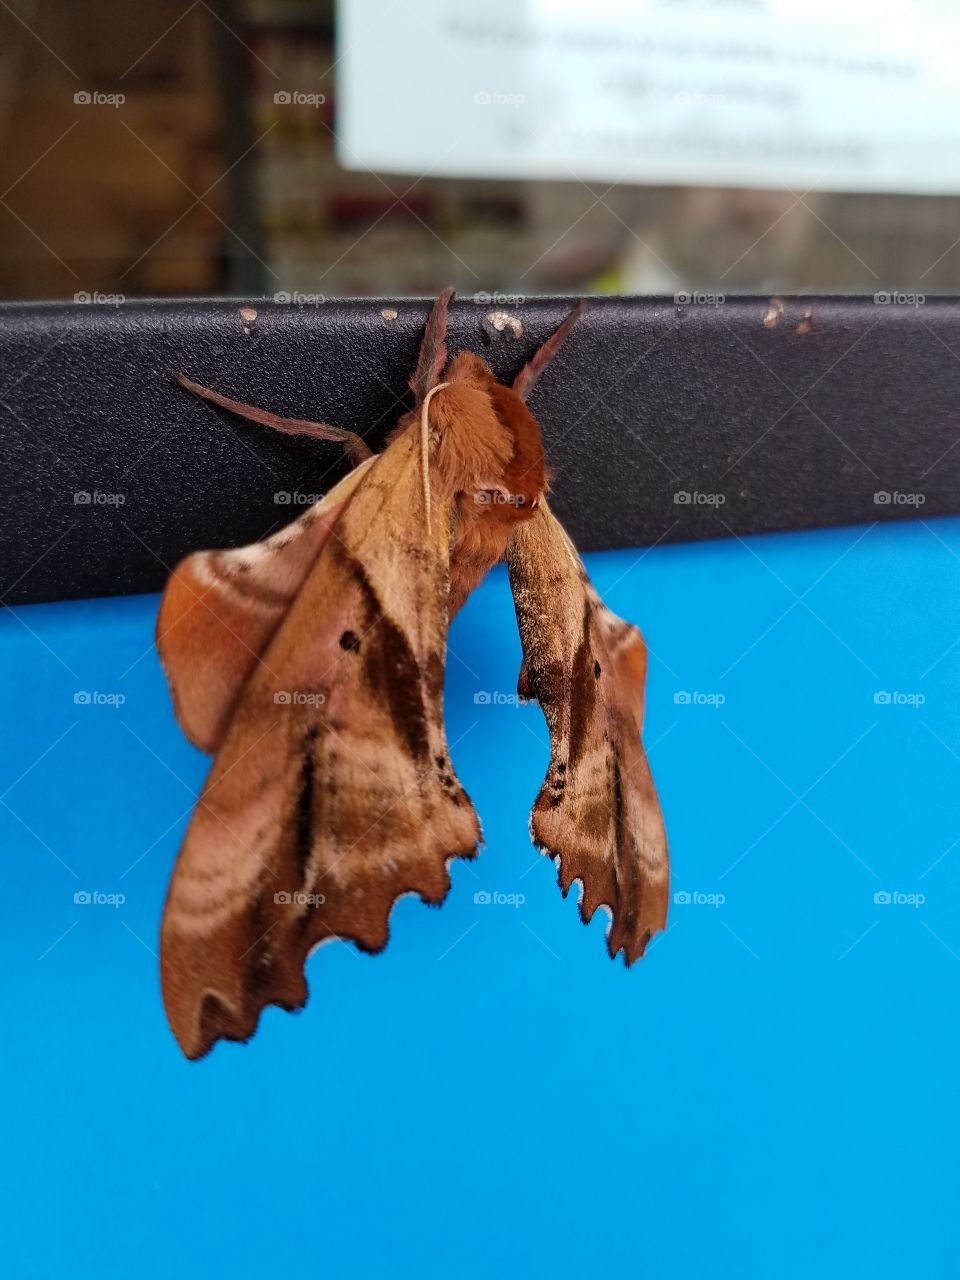 wood moth